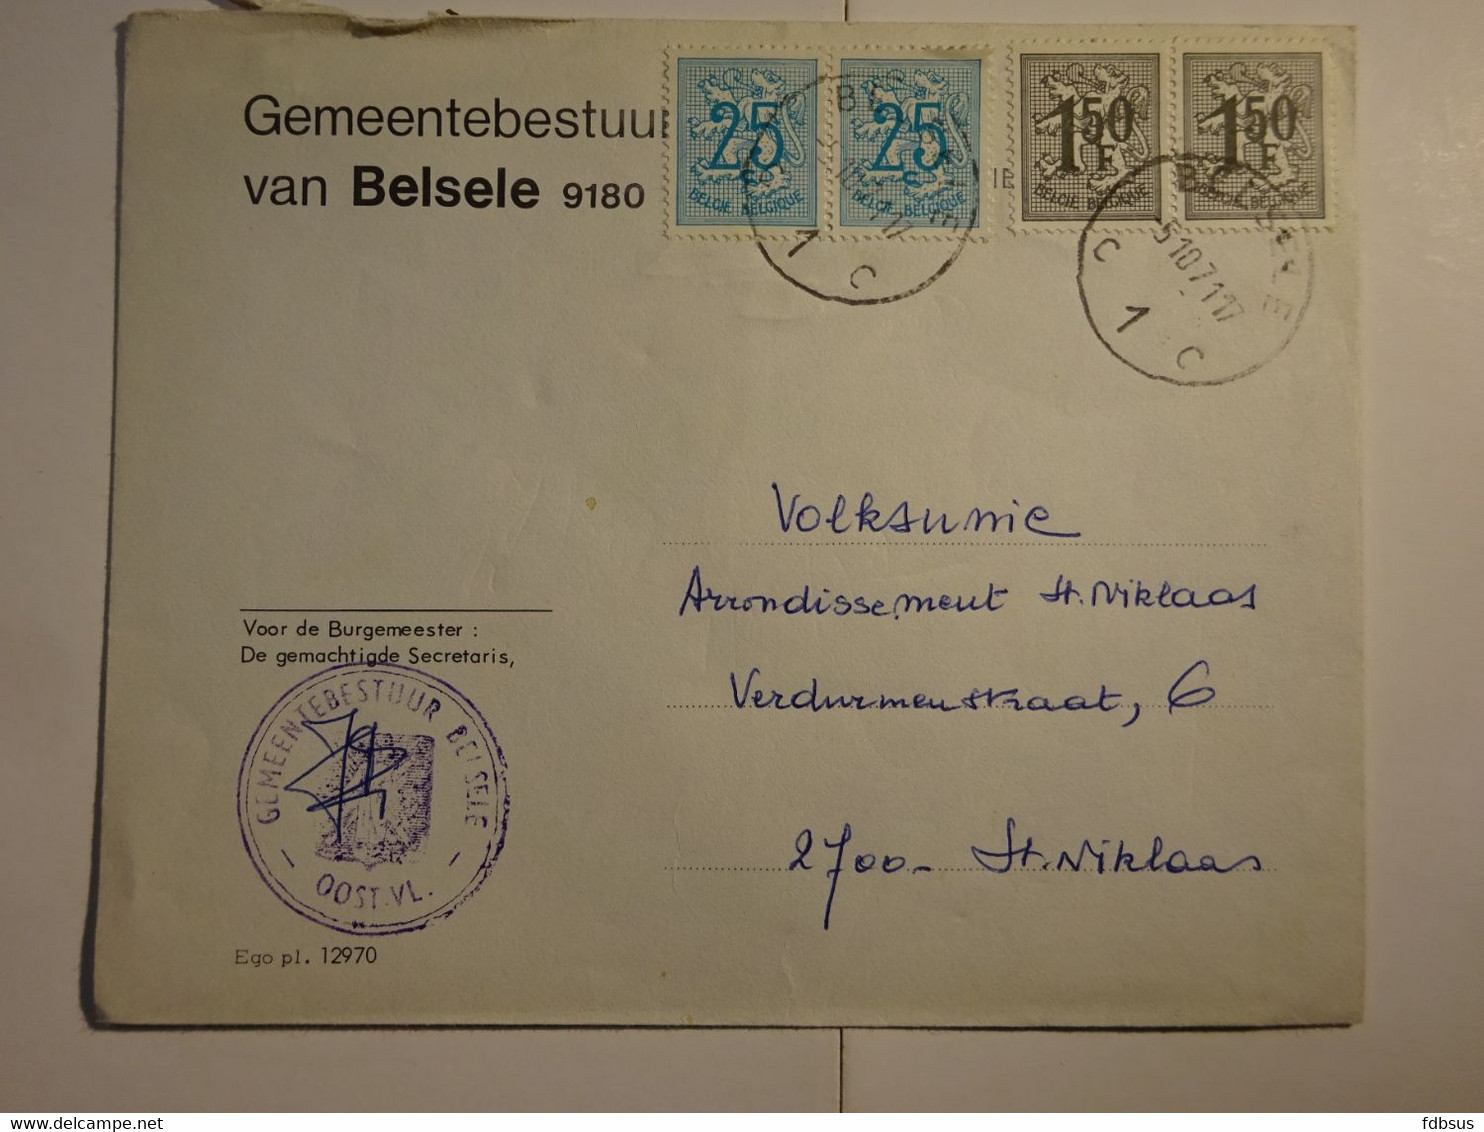 1971 Enveloppe Gemeentebestuur 9180 BELSELE Gefr. 2 X 25c + 2 X 1.50Fr - Zie Scan (s) Voor Zegels, Stempels En Andere - 1977-1985 Cijfer Op De Leeuw